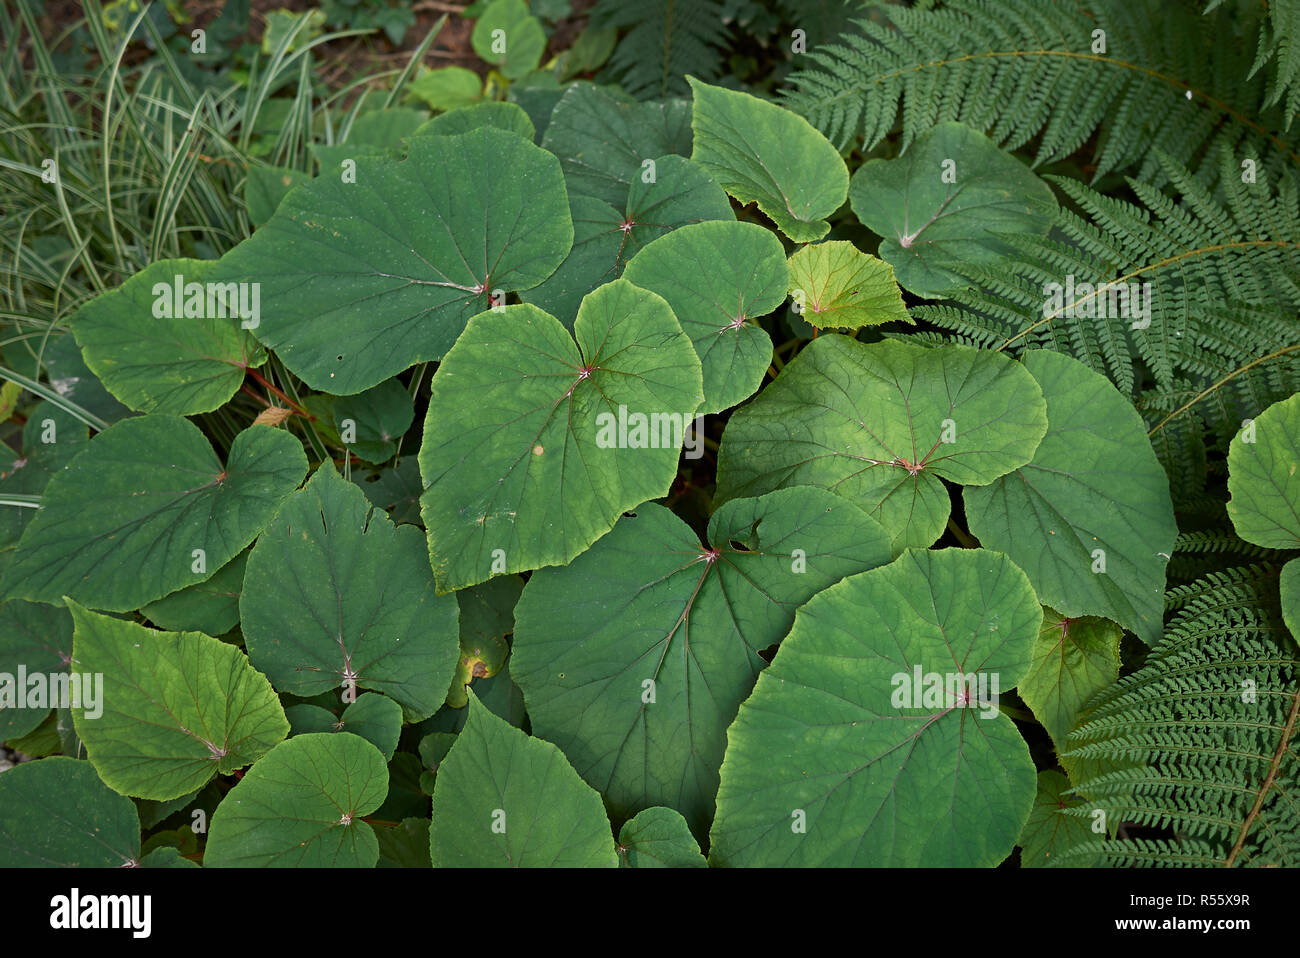 Begonia grandis foliage Stock Photo